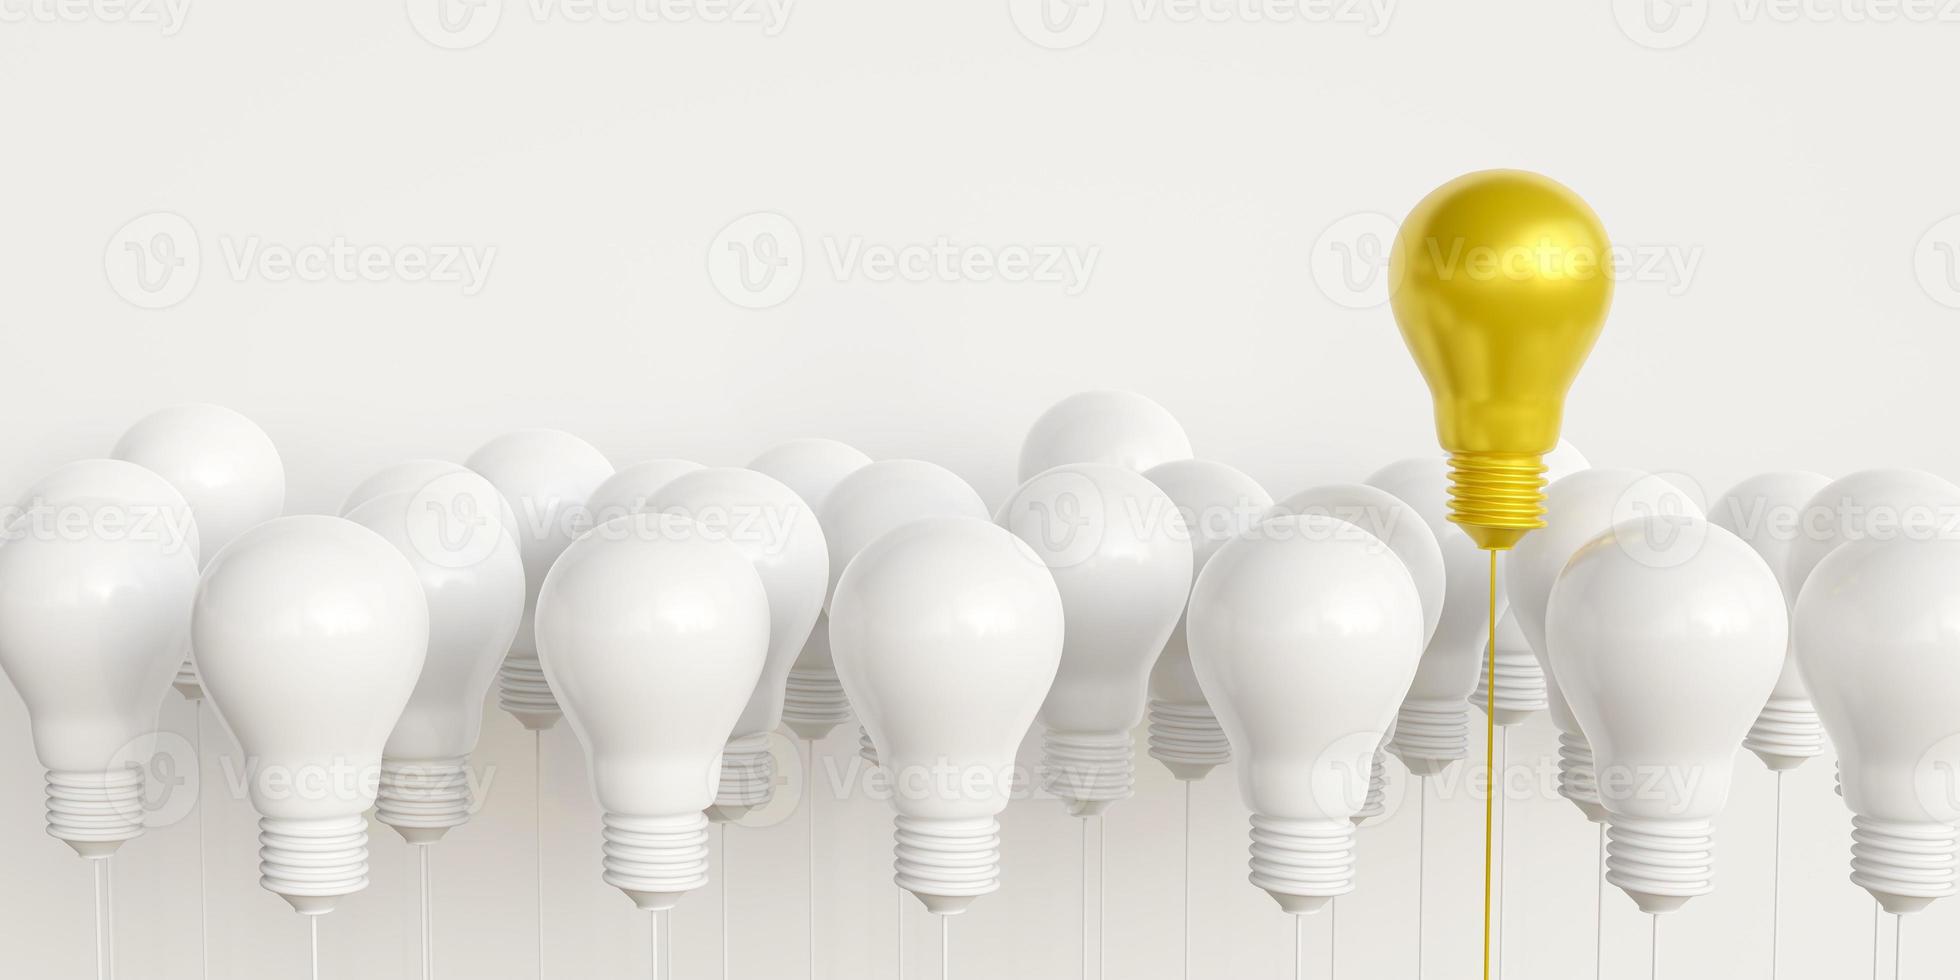 la distintiva bombilla de luz dorada flota sobre la bombilla de luz blanca. concepto de liderazgo talentoso e ideas sobresalientes, buenas ideas seleccionadas, innovación e inspiración. con copia foto